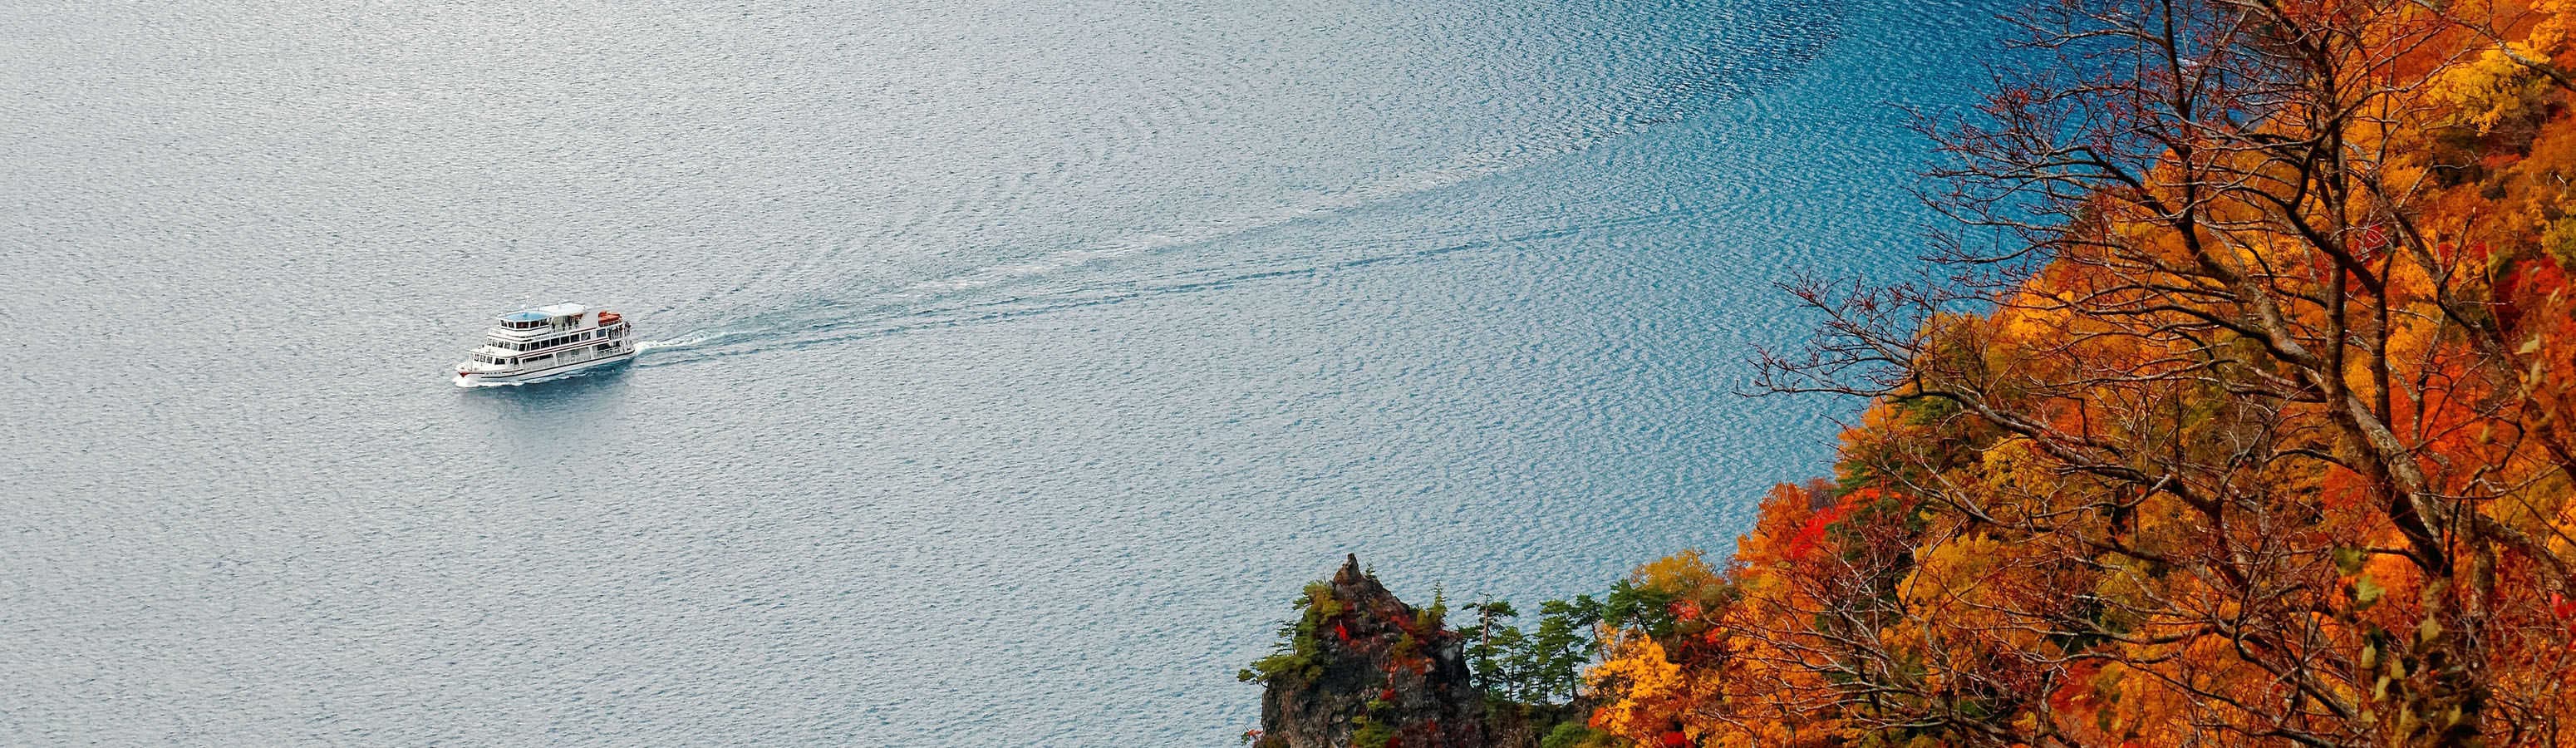 Vagando per i laghi VII - i laghi vulcanici più belli del mondo